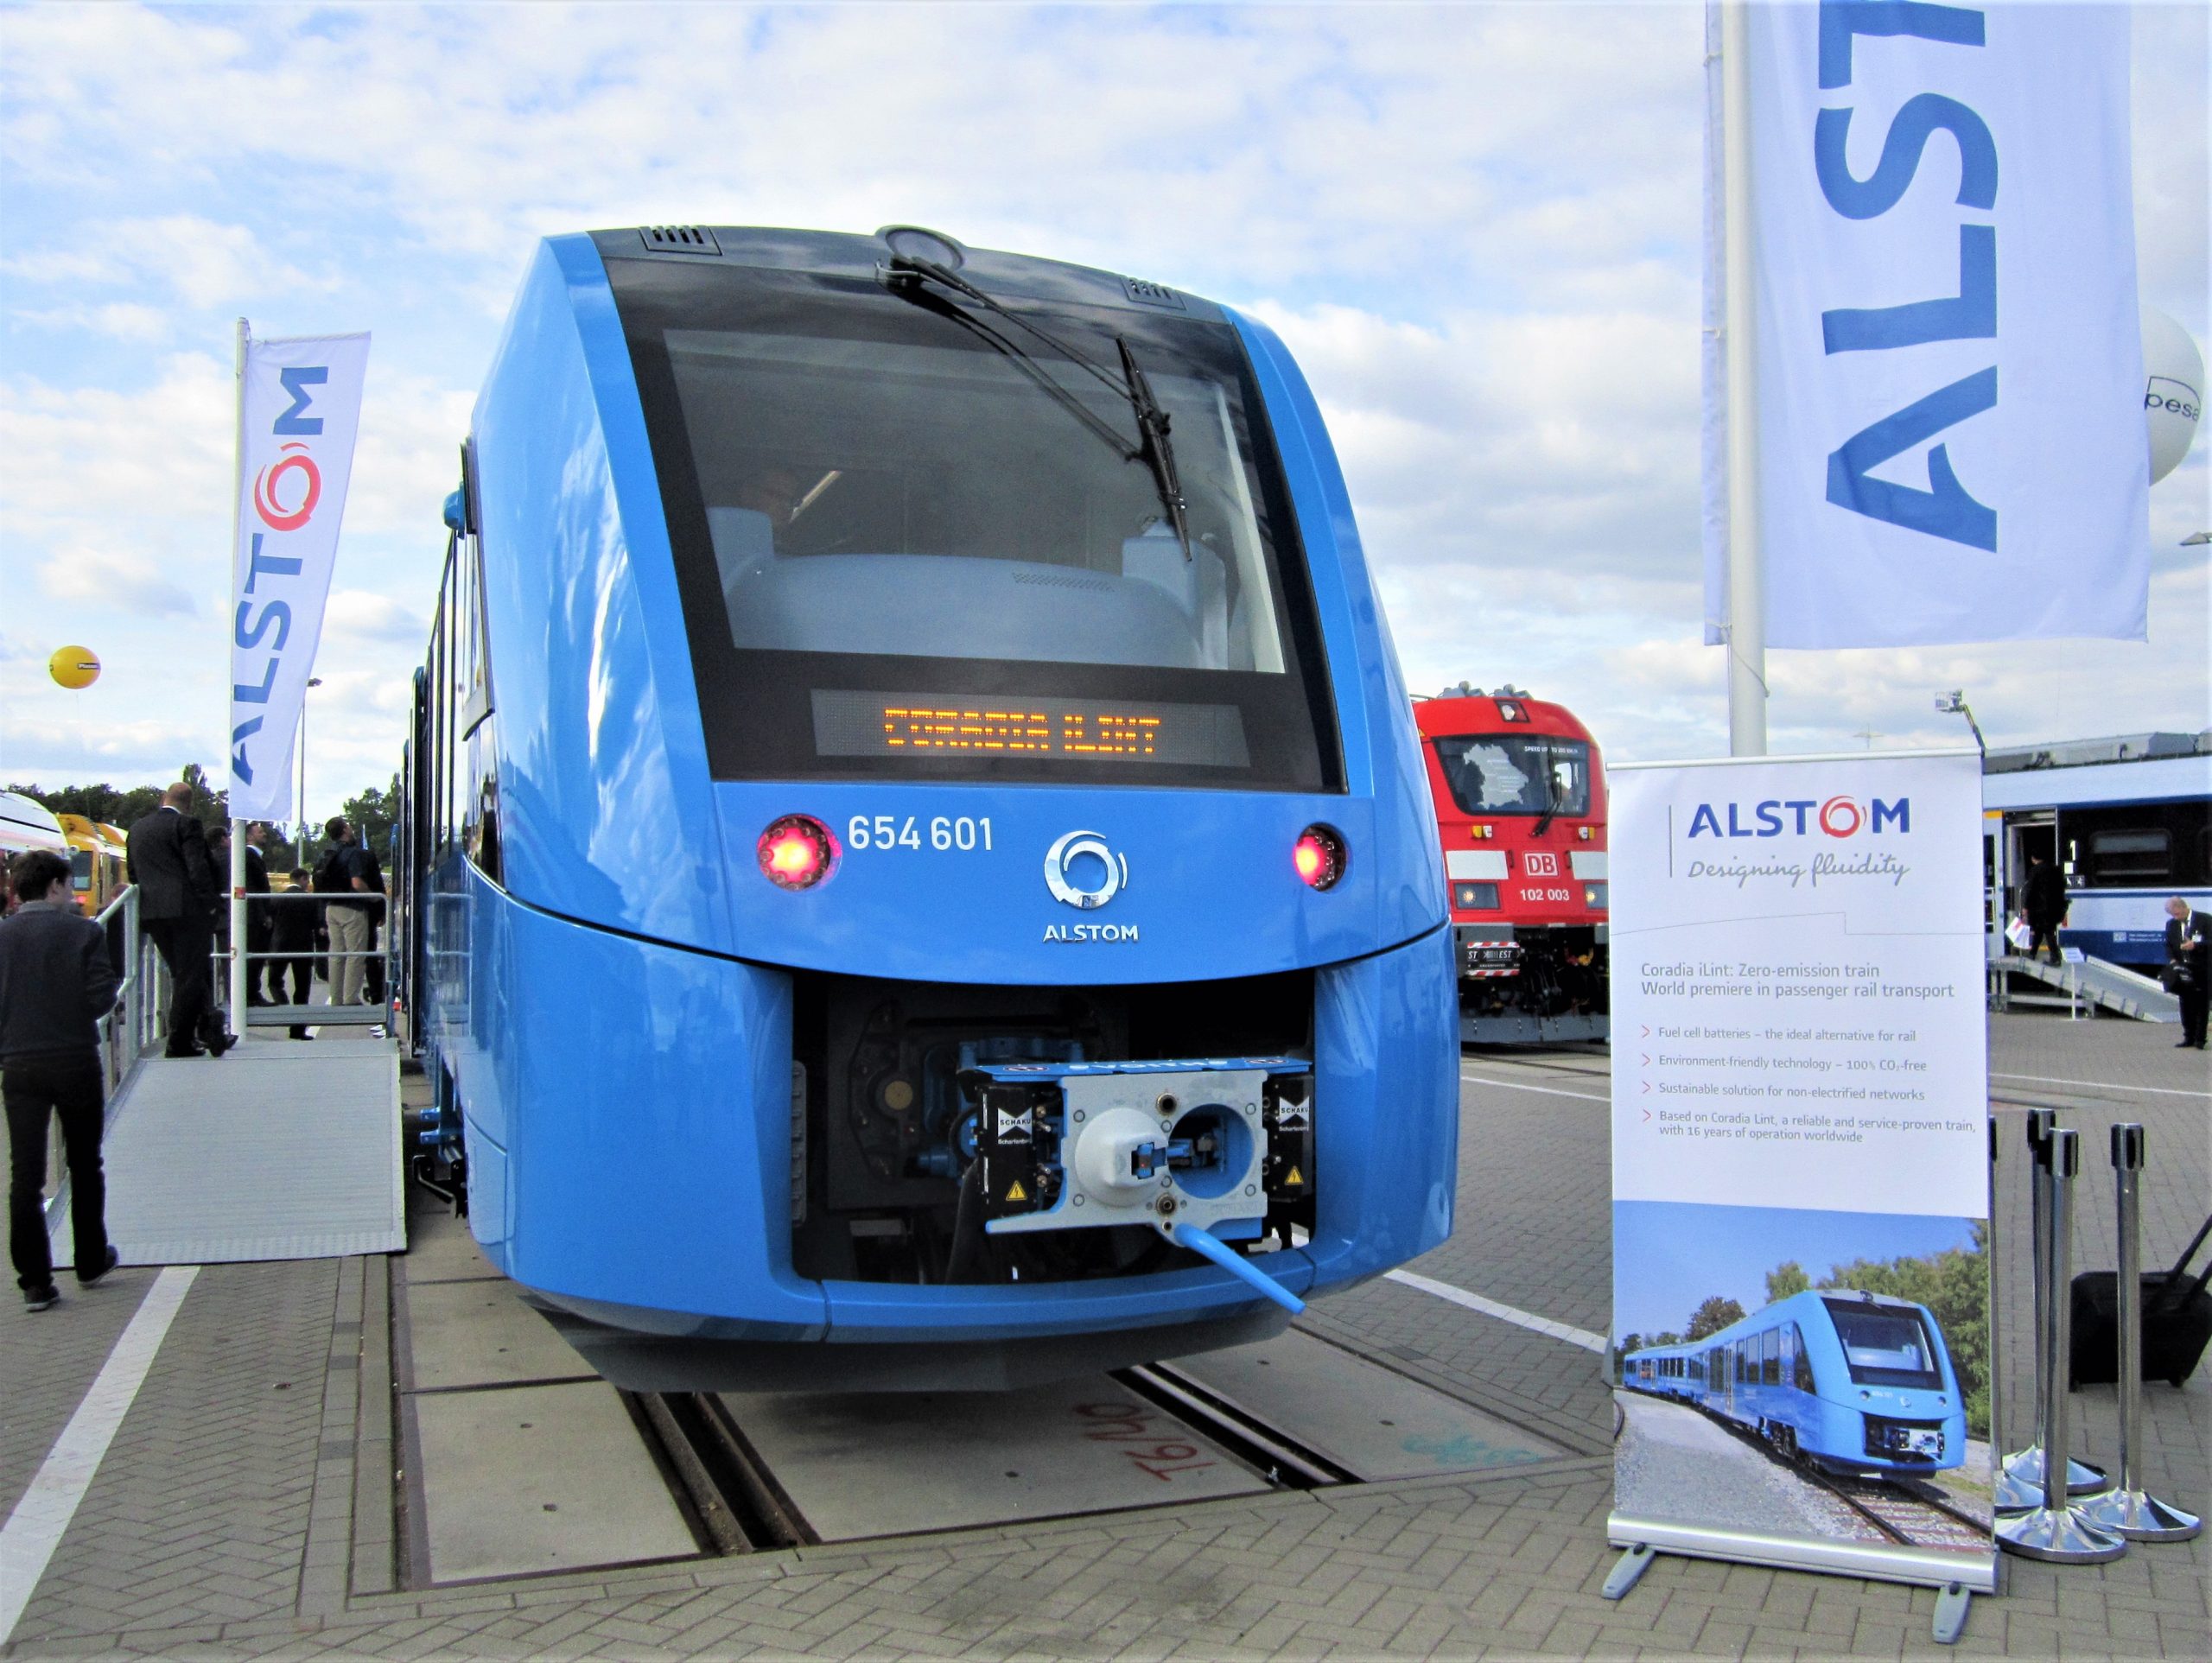 Germany news: हाइड्रोजन (Hydrogen) से चलने वाली दुनिया का पहला यात्री ट्रेन (train) नेटवर्क जर्मनी के राज्य लोअर सैक्सोनी में लॉन्च